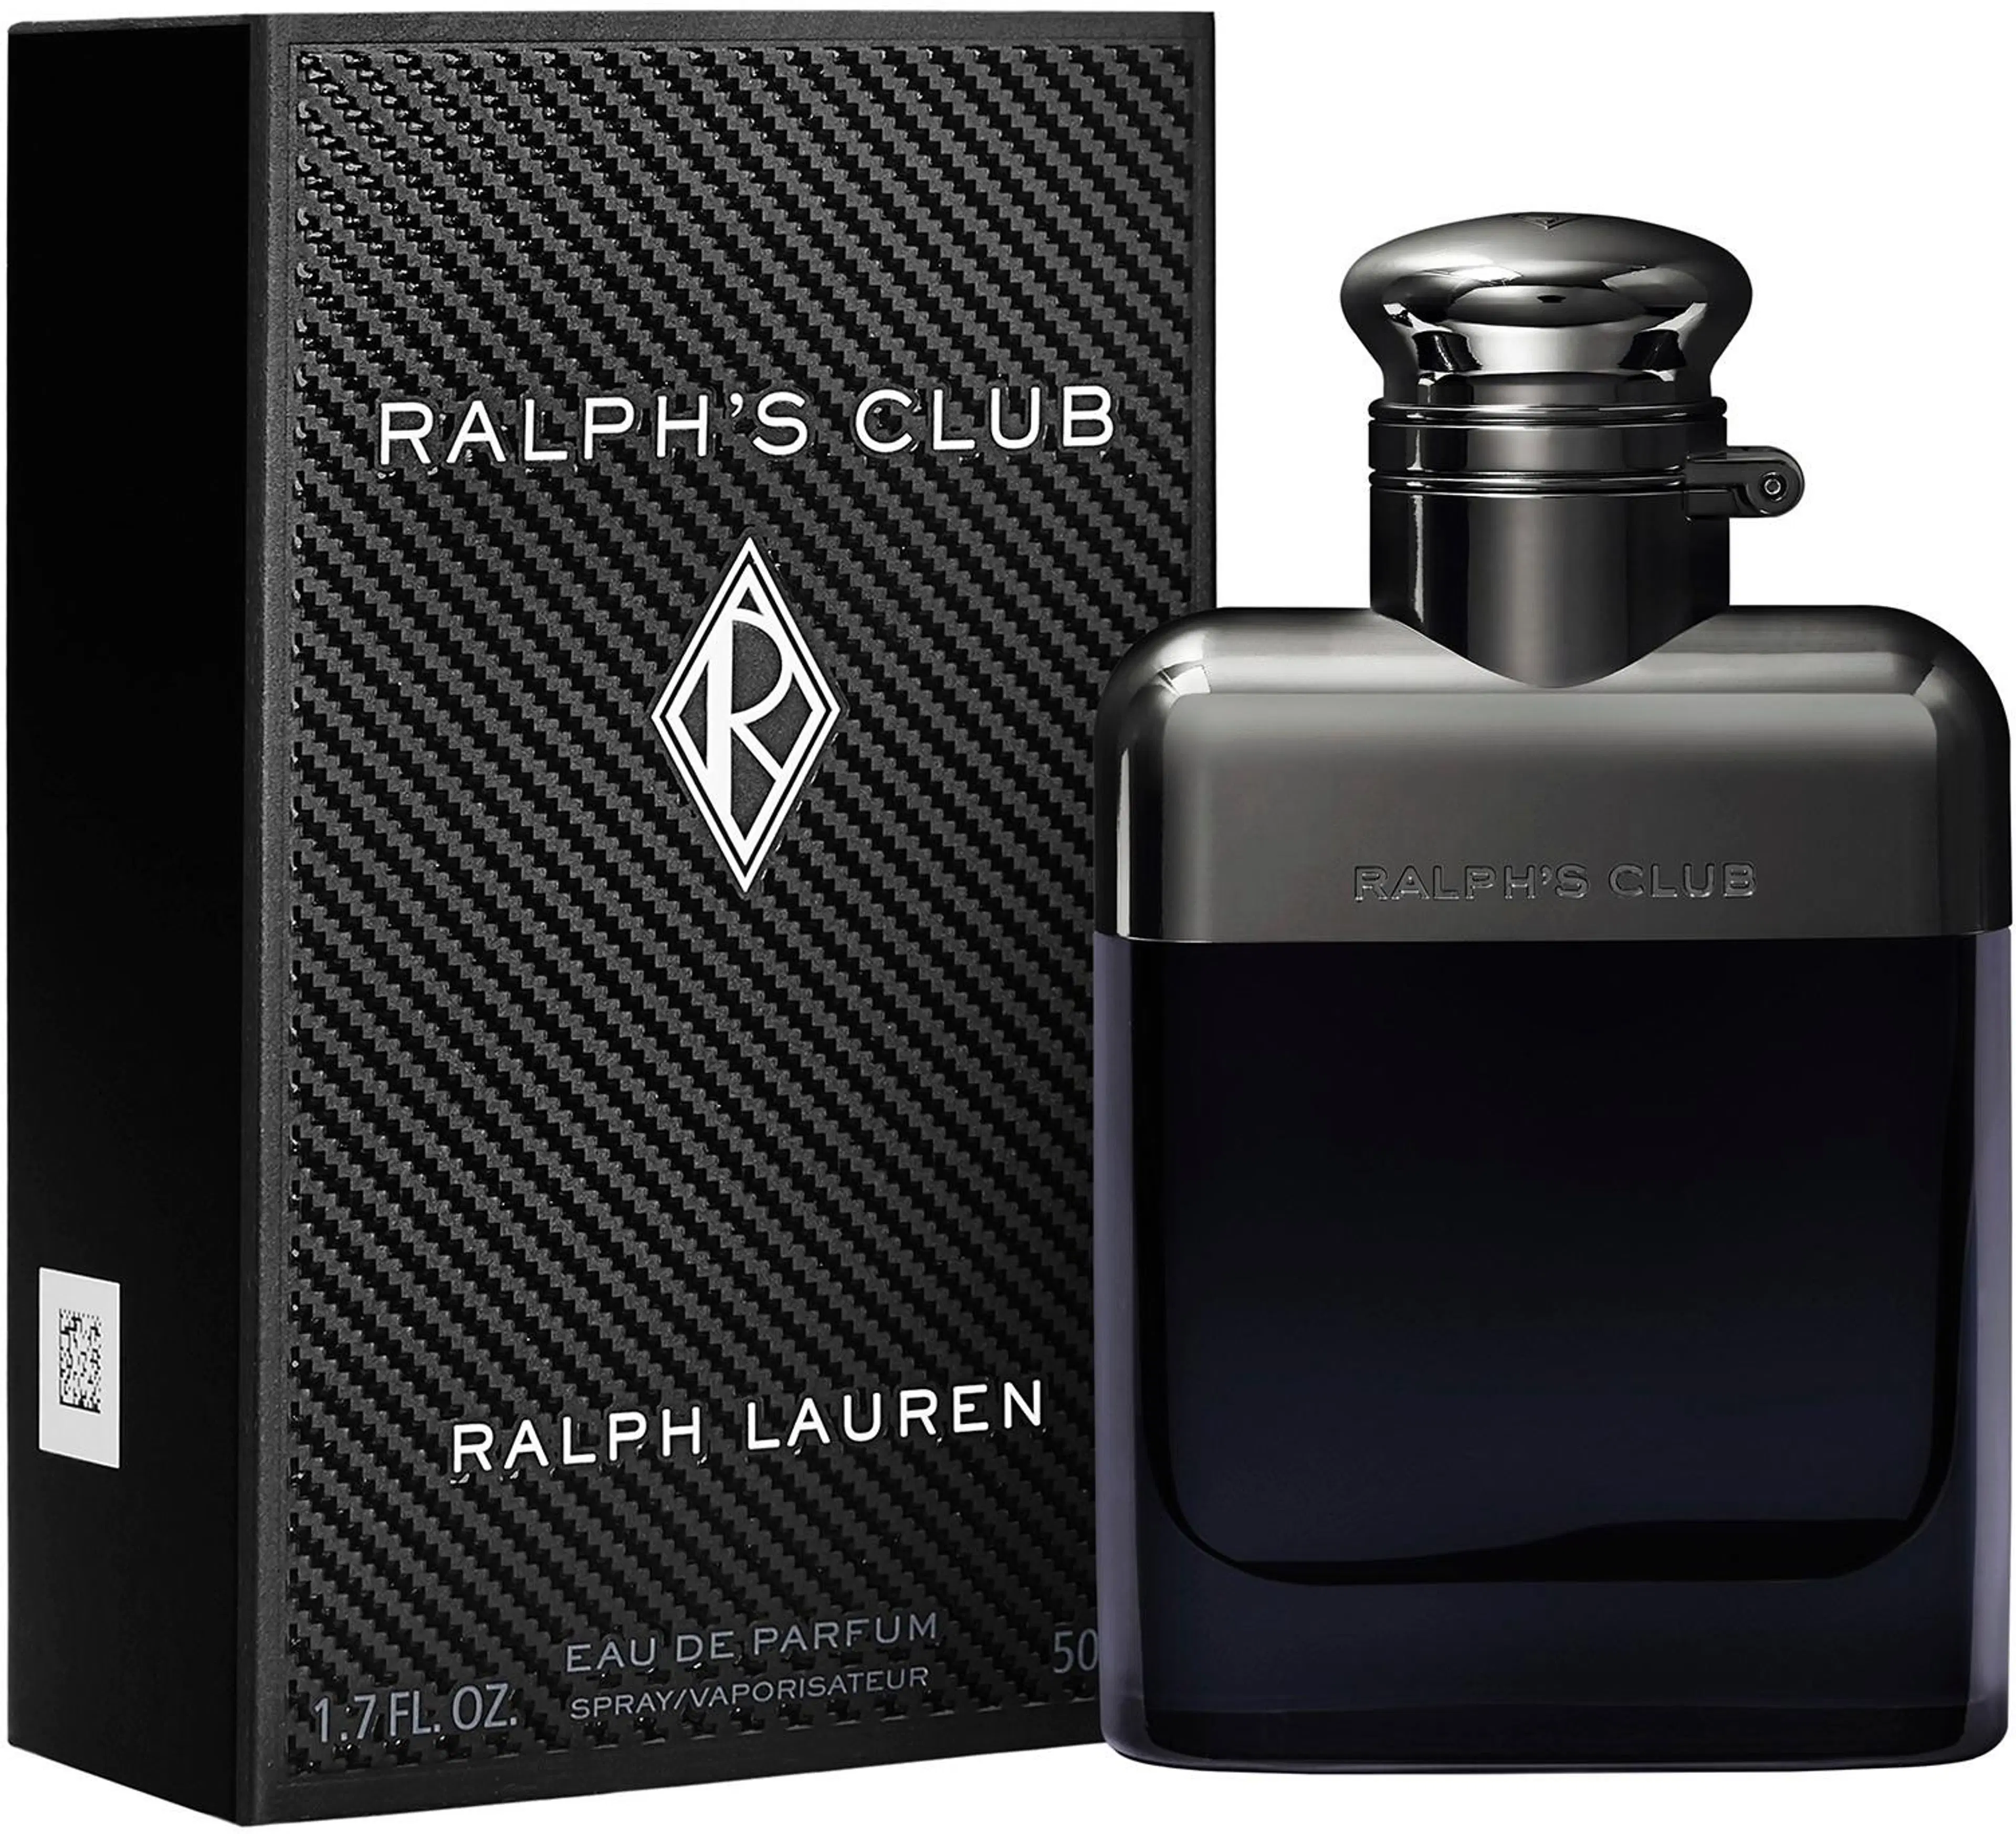 Ralph Lauren Ralph's Club EdP tuoksu 50 ml